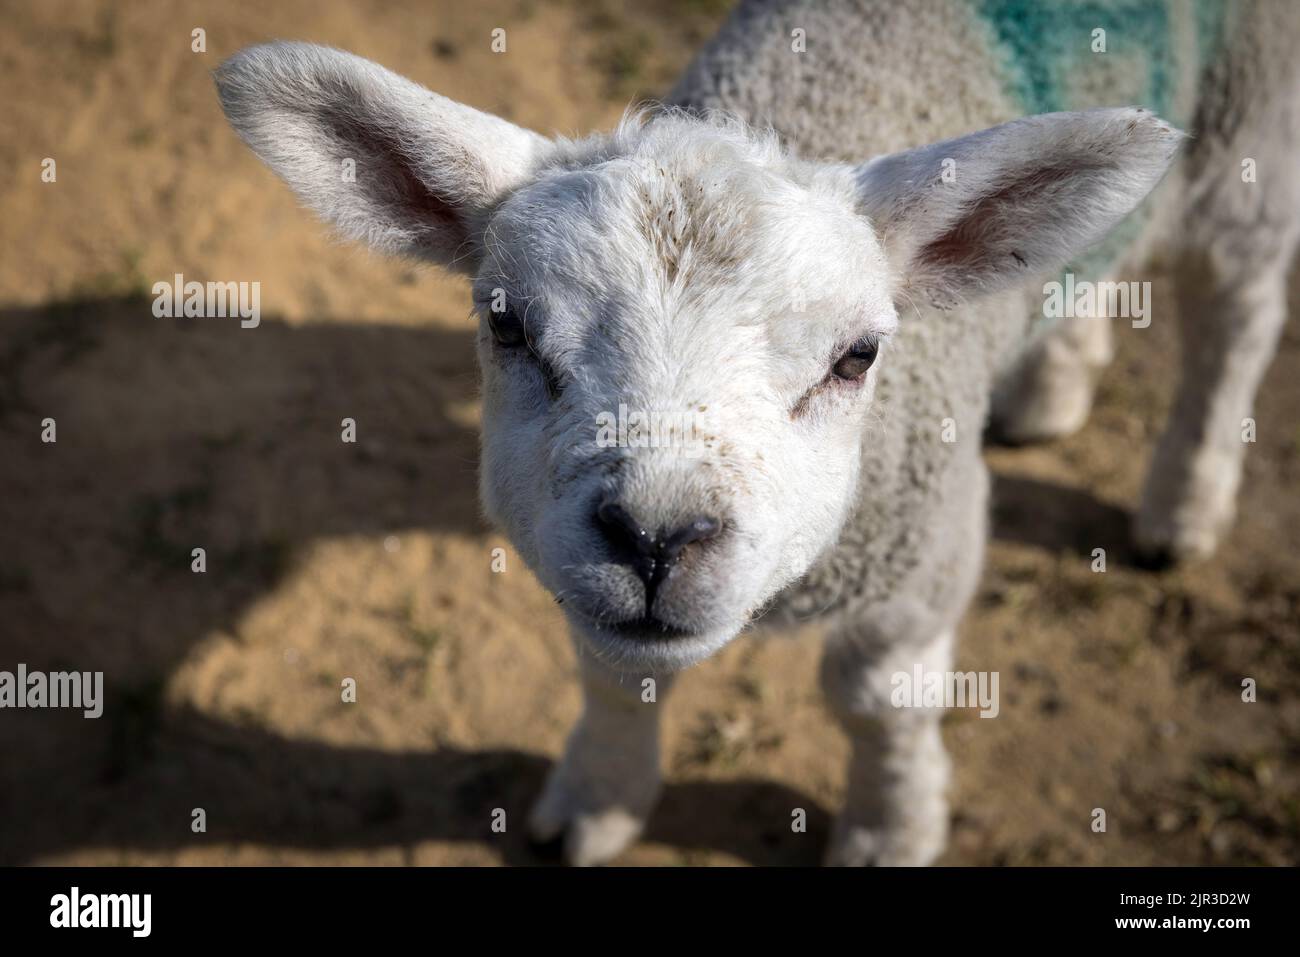 A lamb at Newsholme Stock Photo